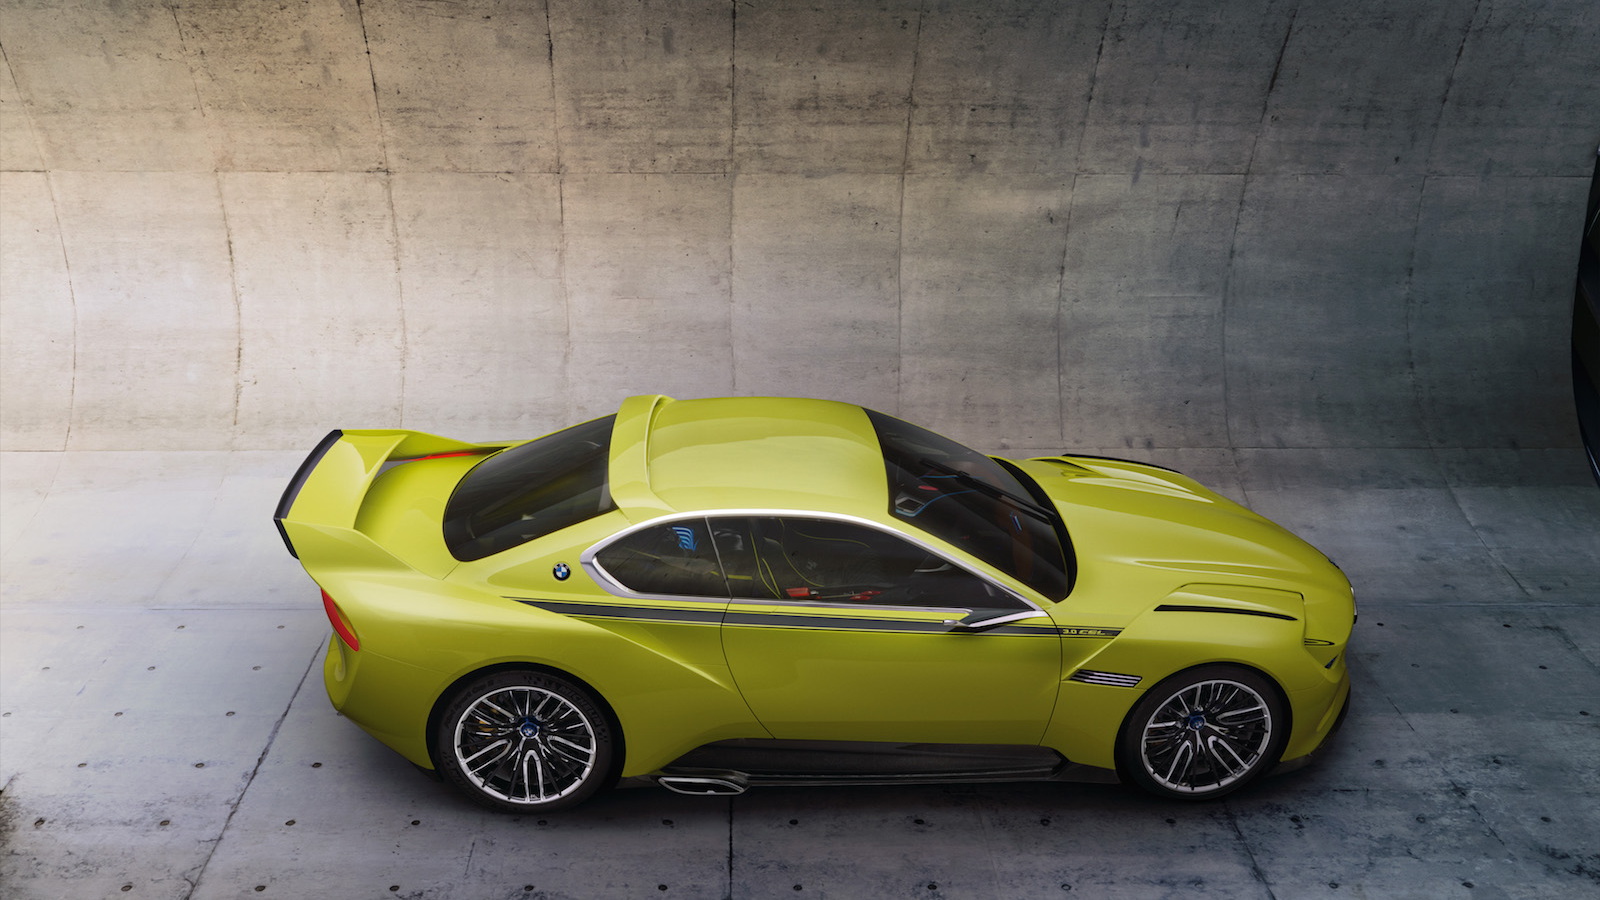 BMW 3.0 CSL Hommage concept, 2015 Concorso d’Eleganza Villa d’Este